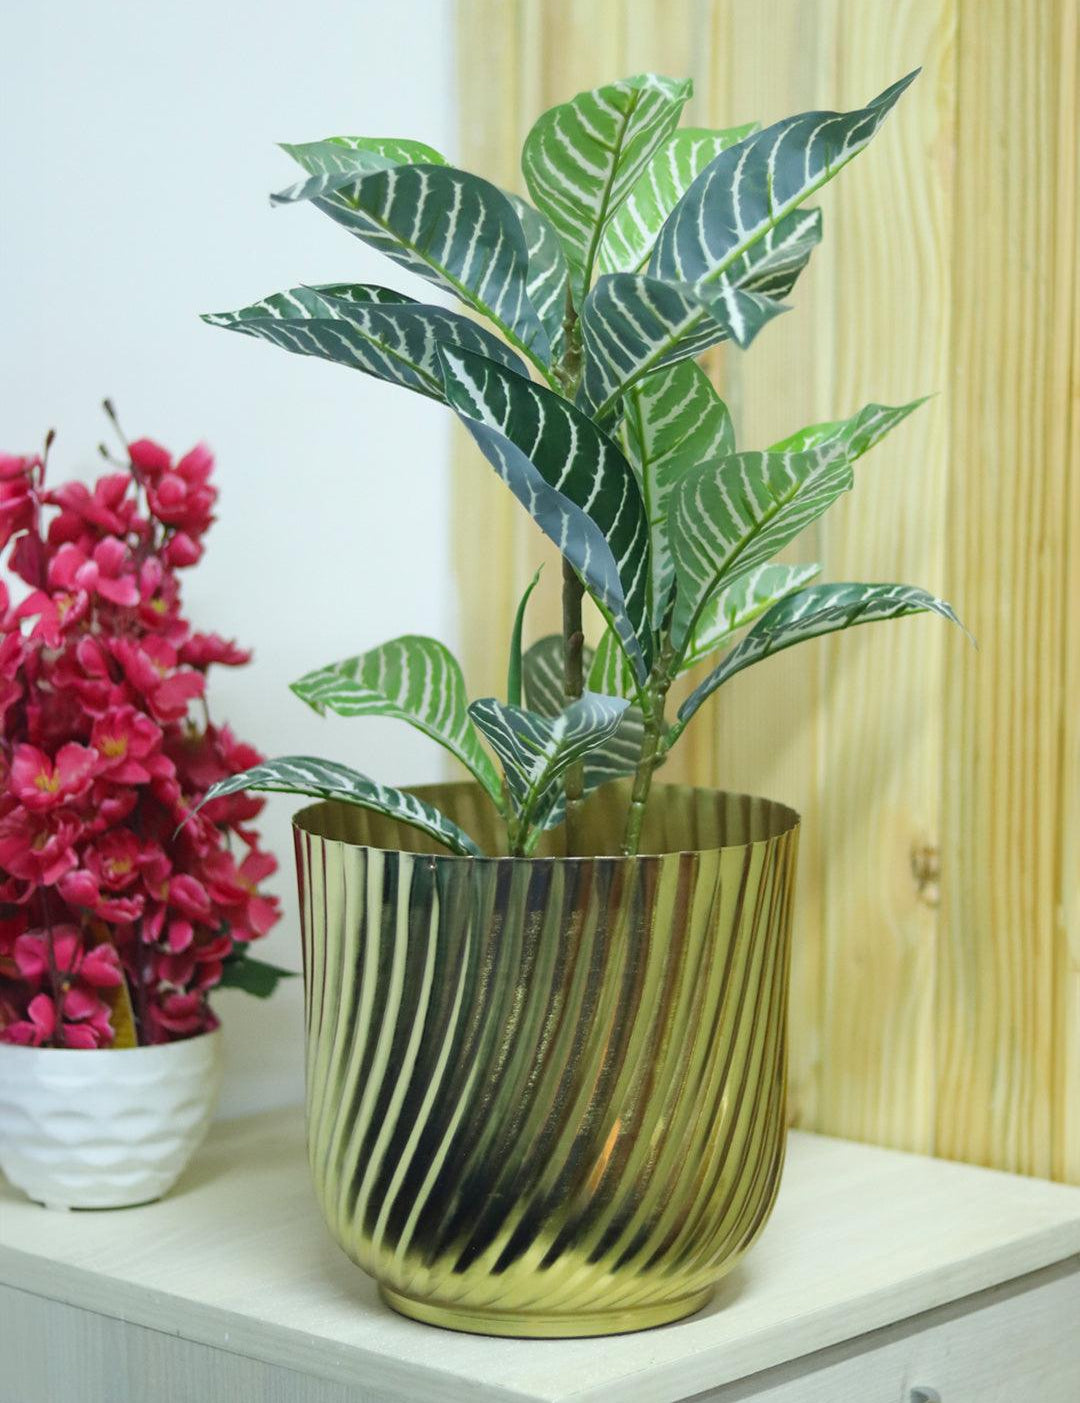 Ribbed Flower Vase - Golden & Metal - MARKET99